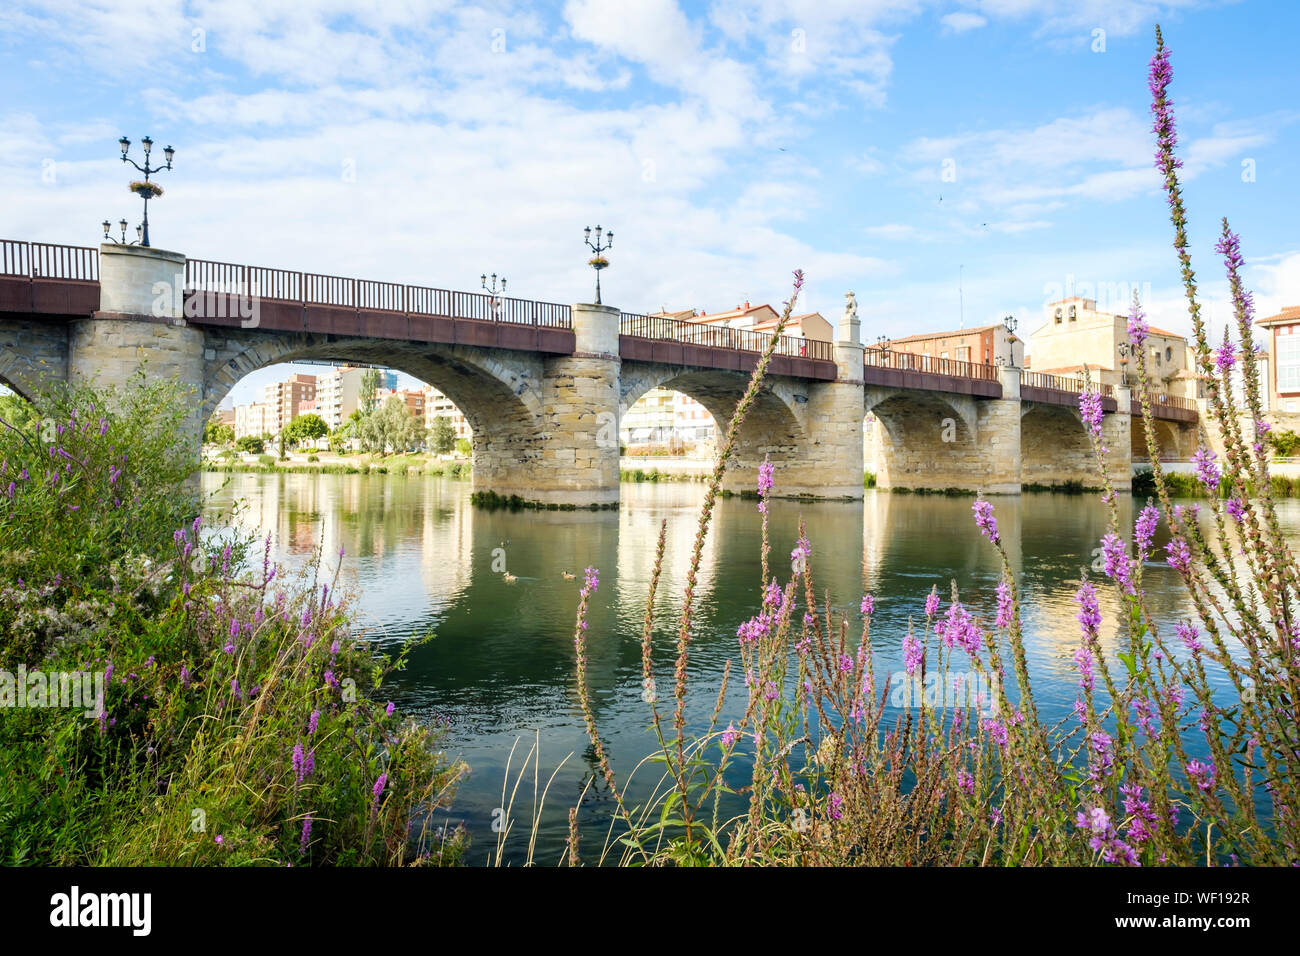 Historic Bridge of Carlos III over the River Ebro in Miranda del Ebro, Burgos Province, Spain Stock Photo